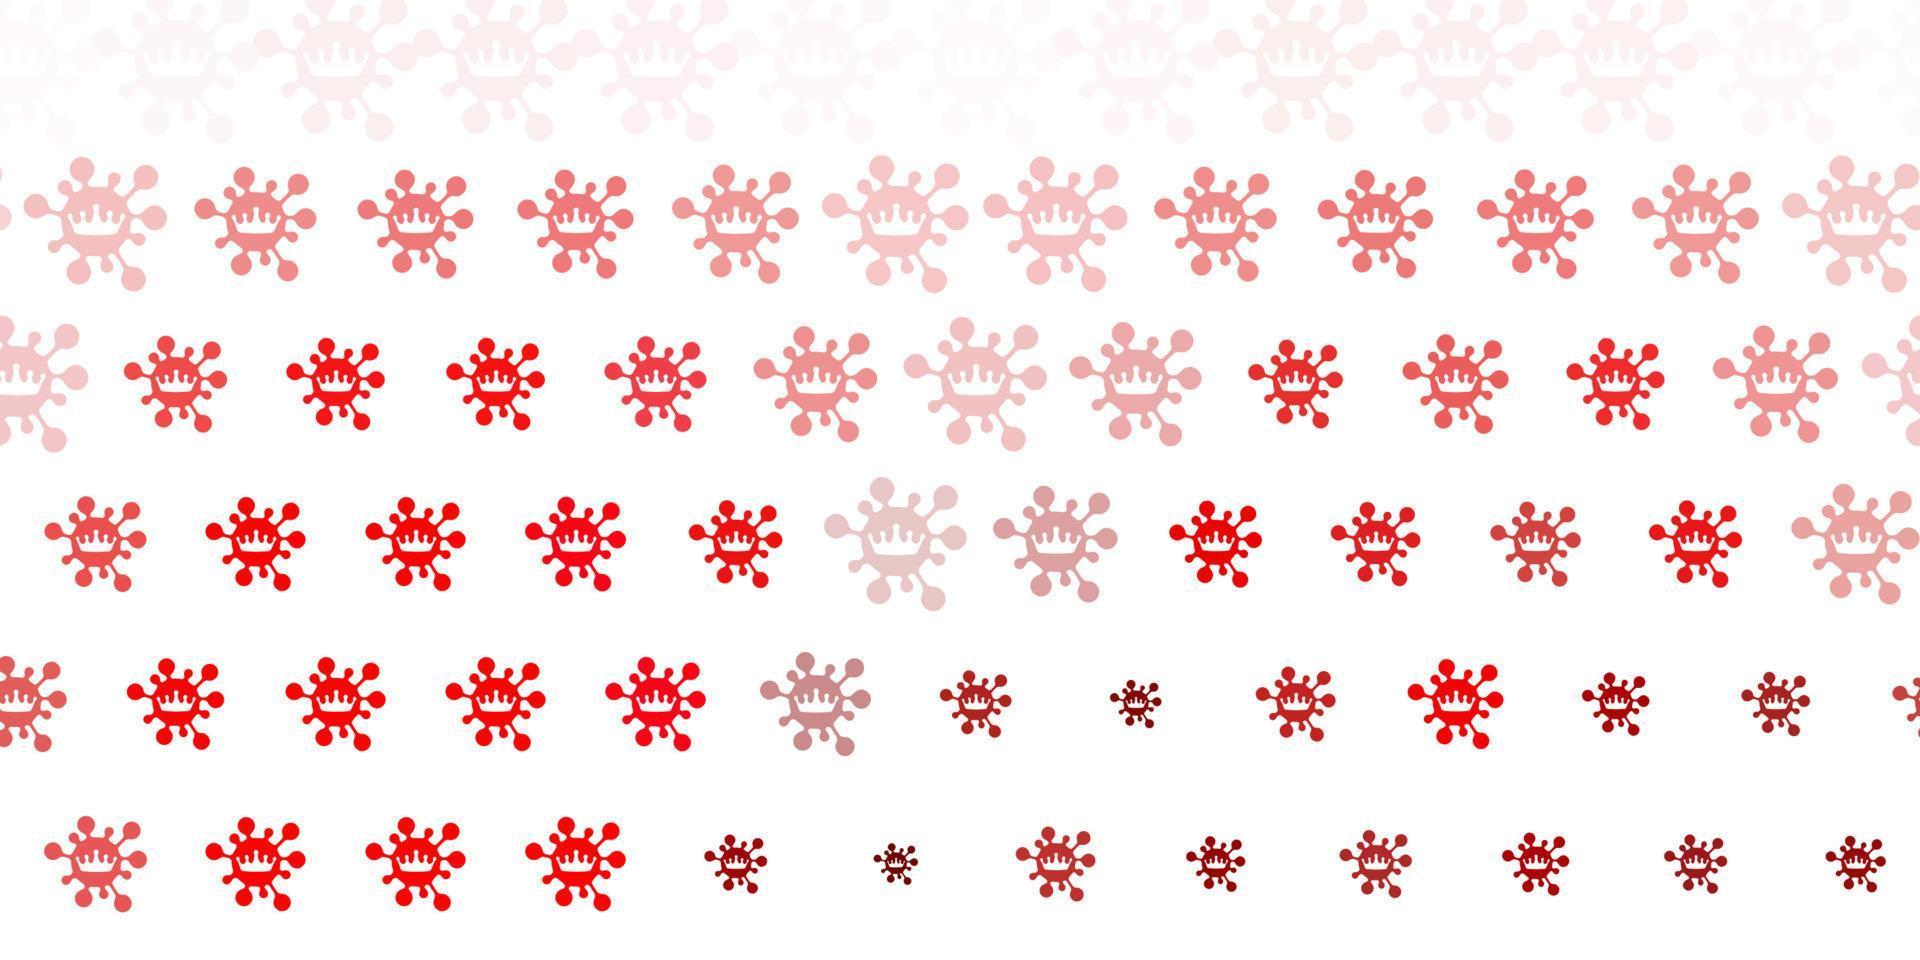 toile de fond de vecteur rose clair, rouge avec symboles de virus.